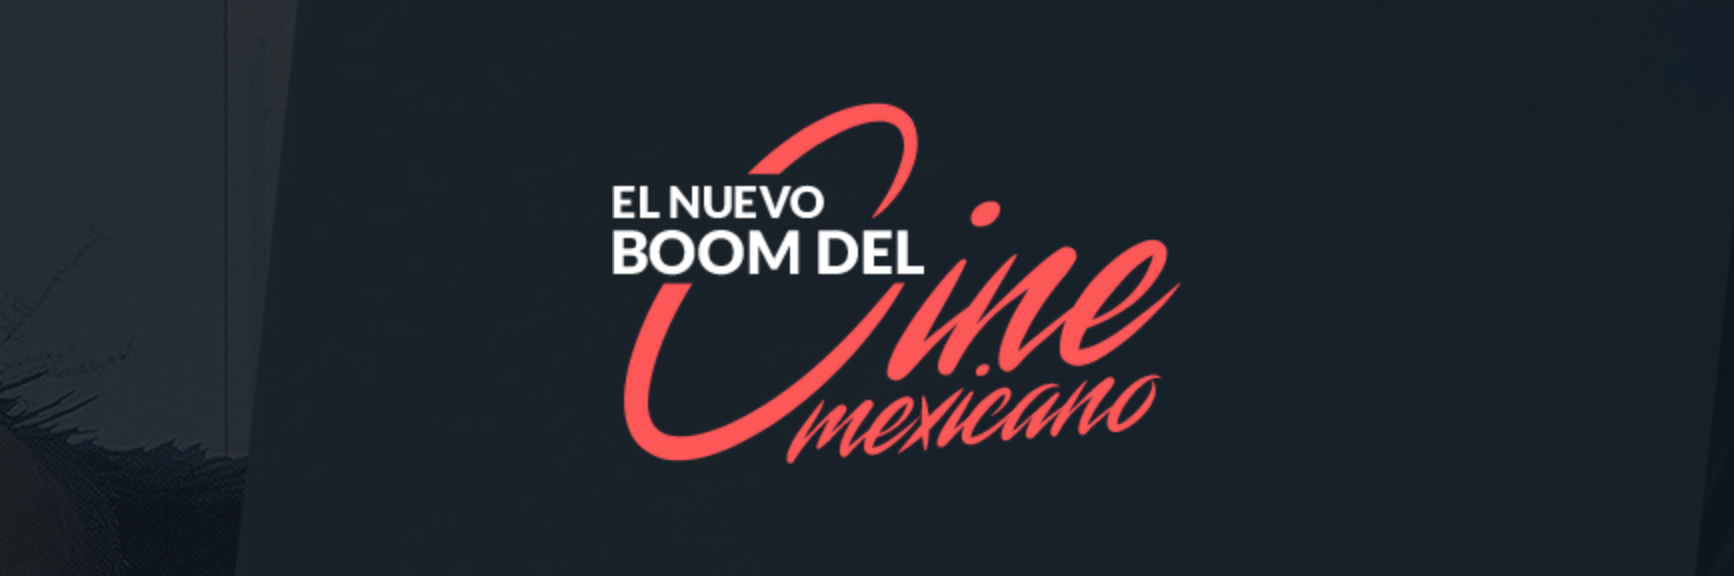 El nuevo boom del Cine Mexicano